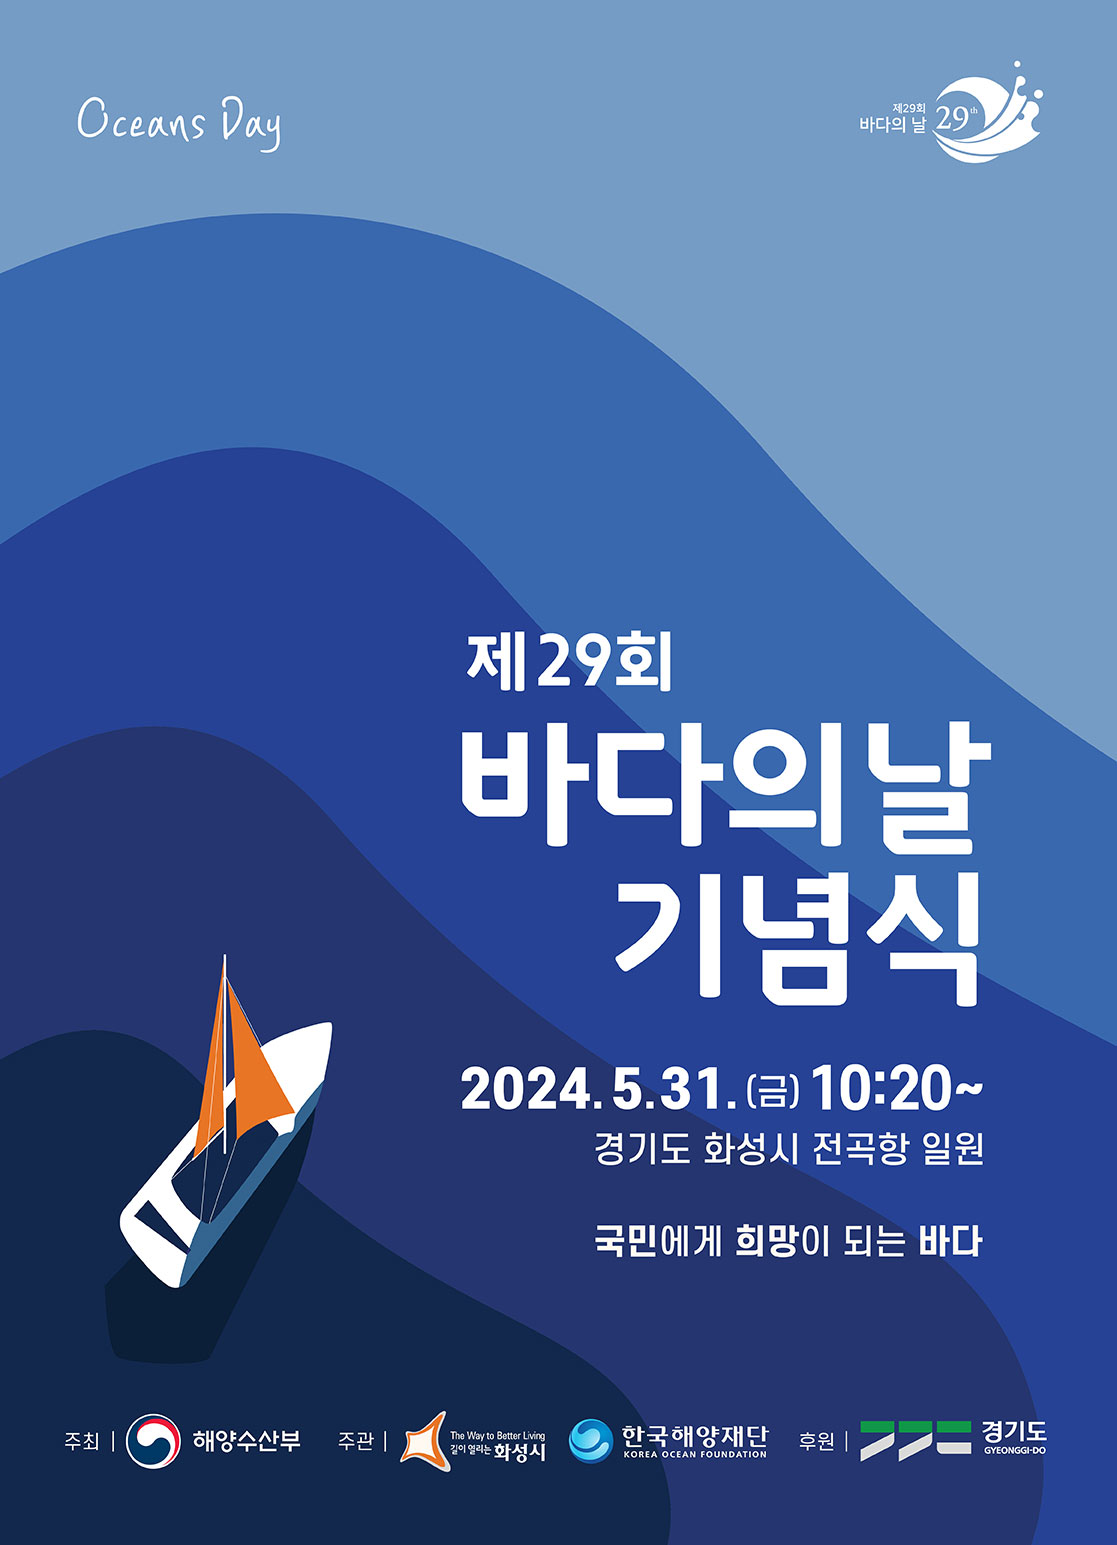 제29회 바다의 날 기념식 개최 알림